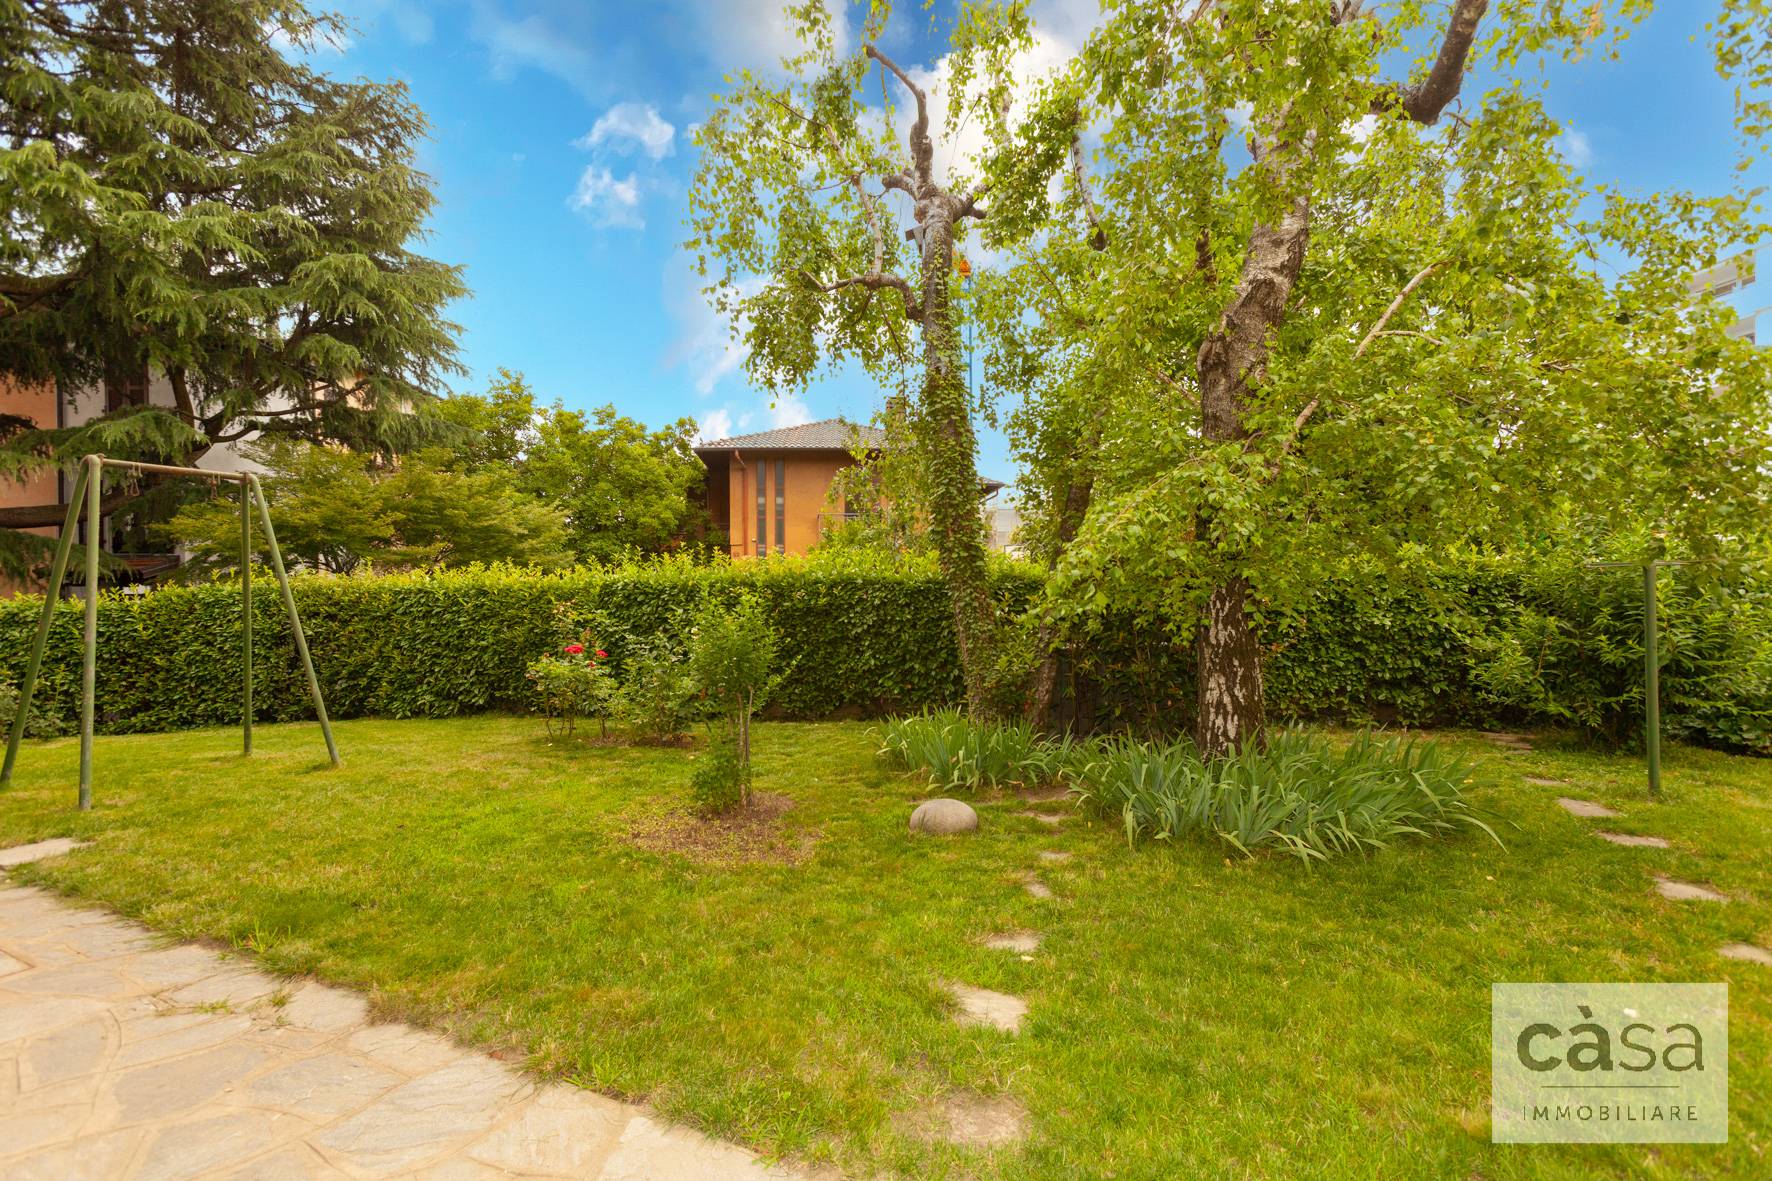 Villa in vendita a Varese, 7 locali, zona eno, prezzo € 520.000 | PortaleAgenzieImmobiliari.it